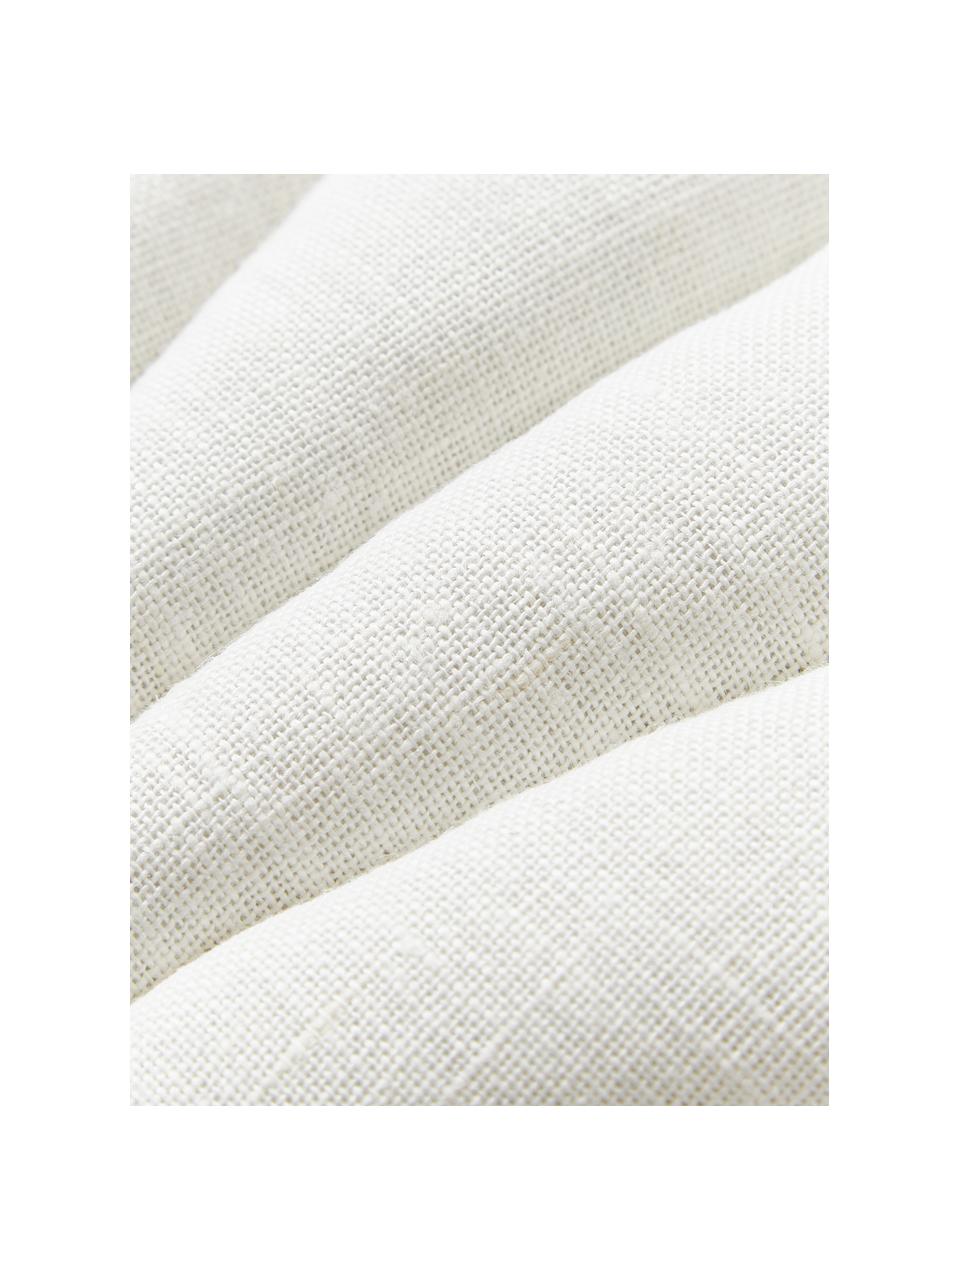 Cuscino in lino a forma di conchiglia Shell, Retro: 100% cotone, Bianco crema, Larg. 34 x Lung. 38 cm